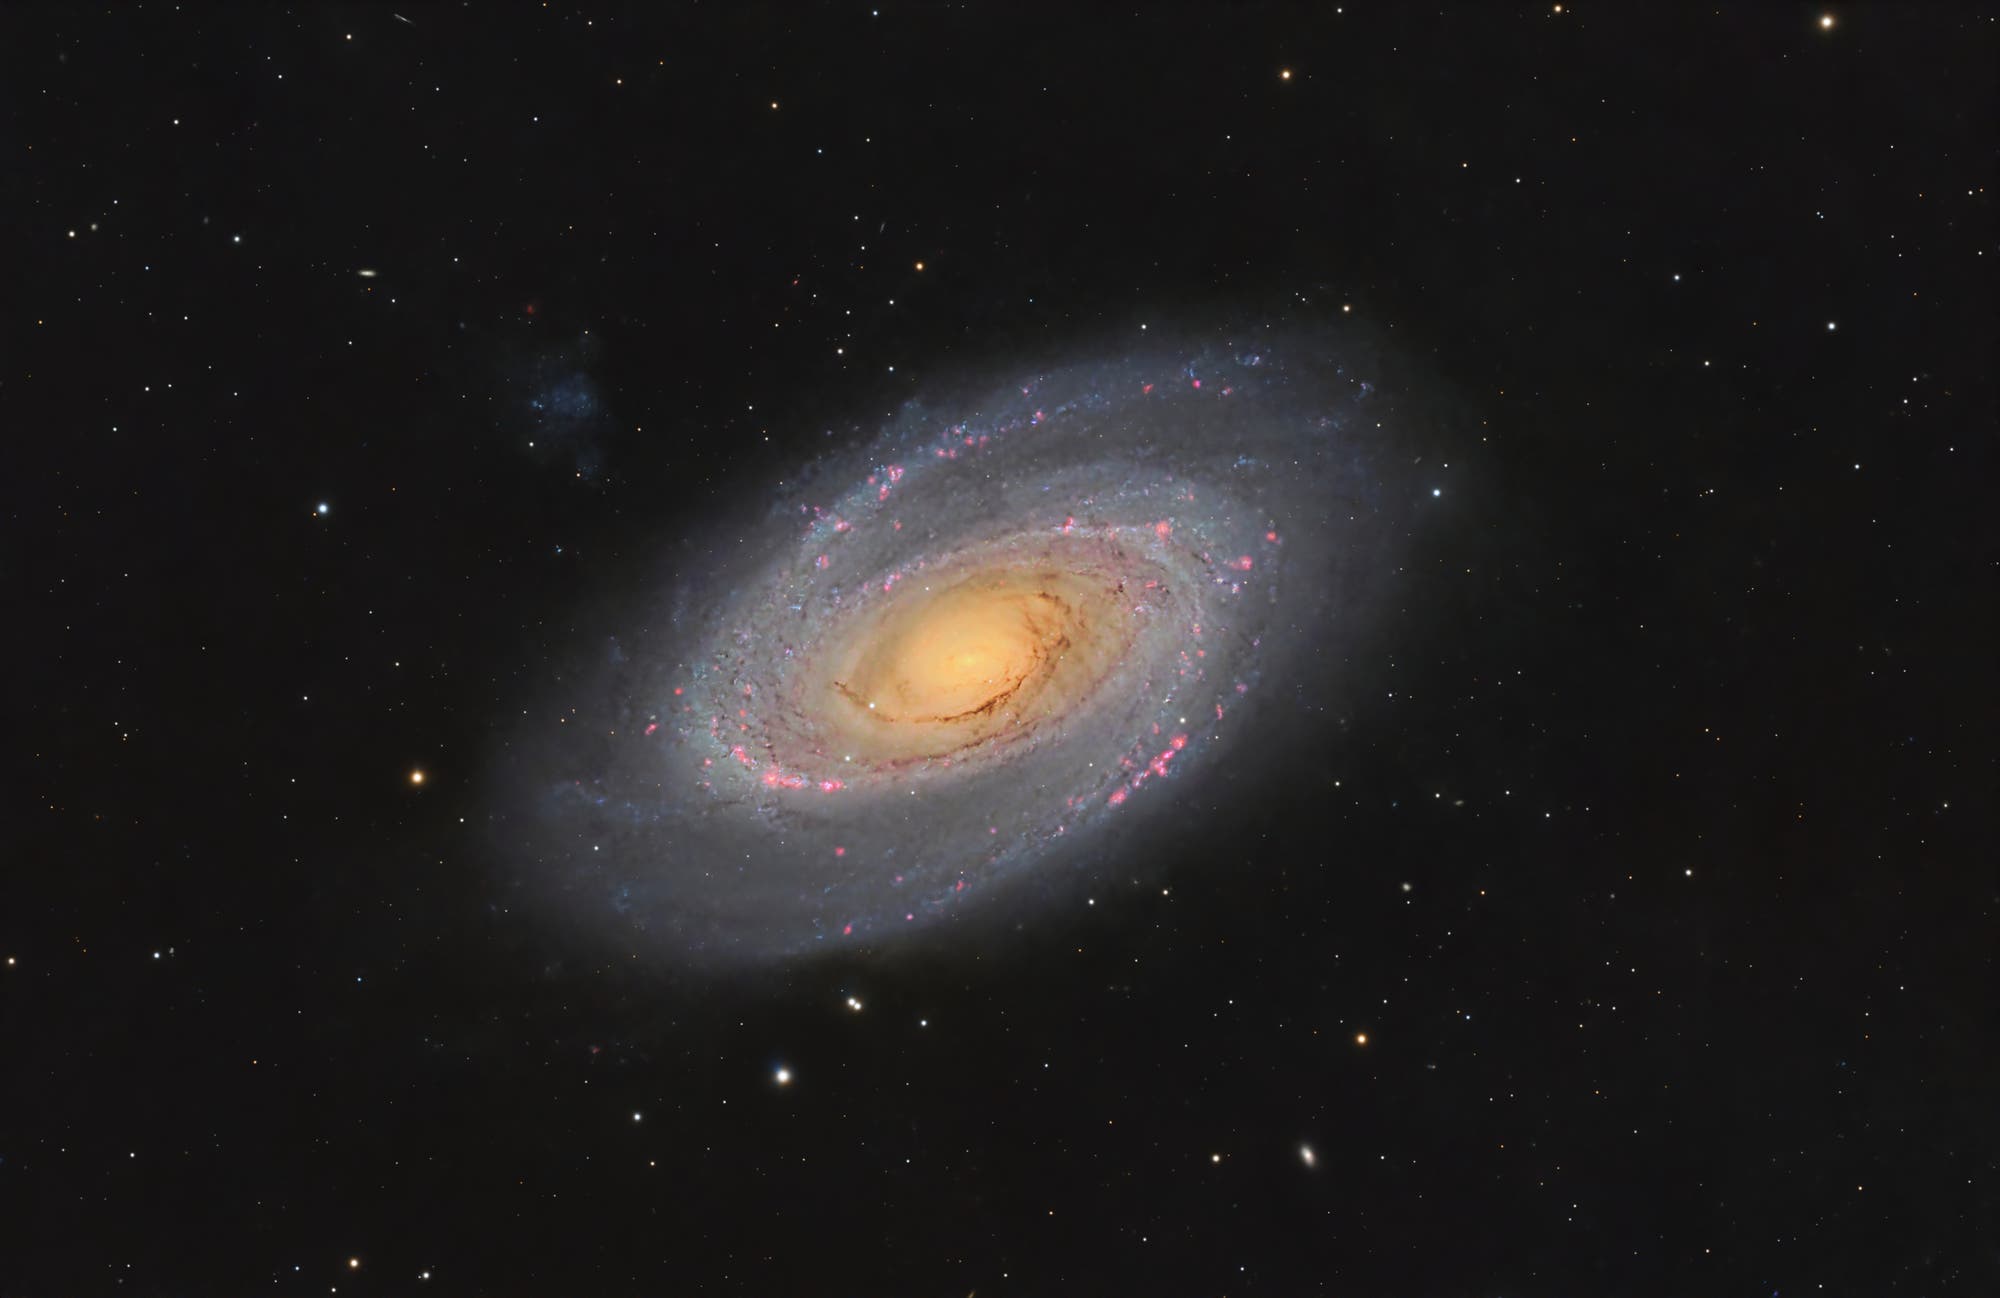 Messier 81 - Bodes Galaxie